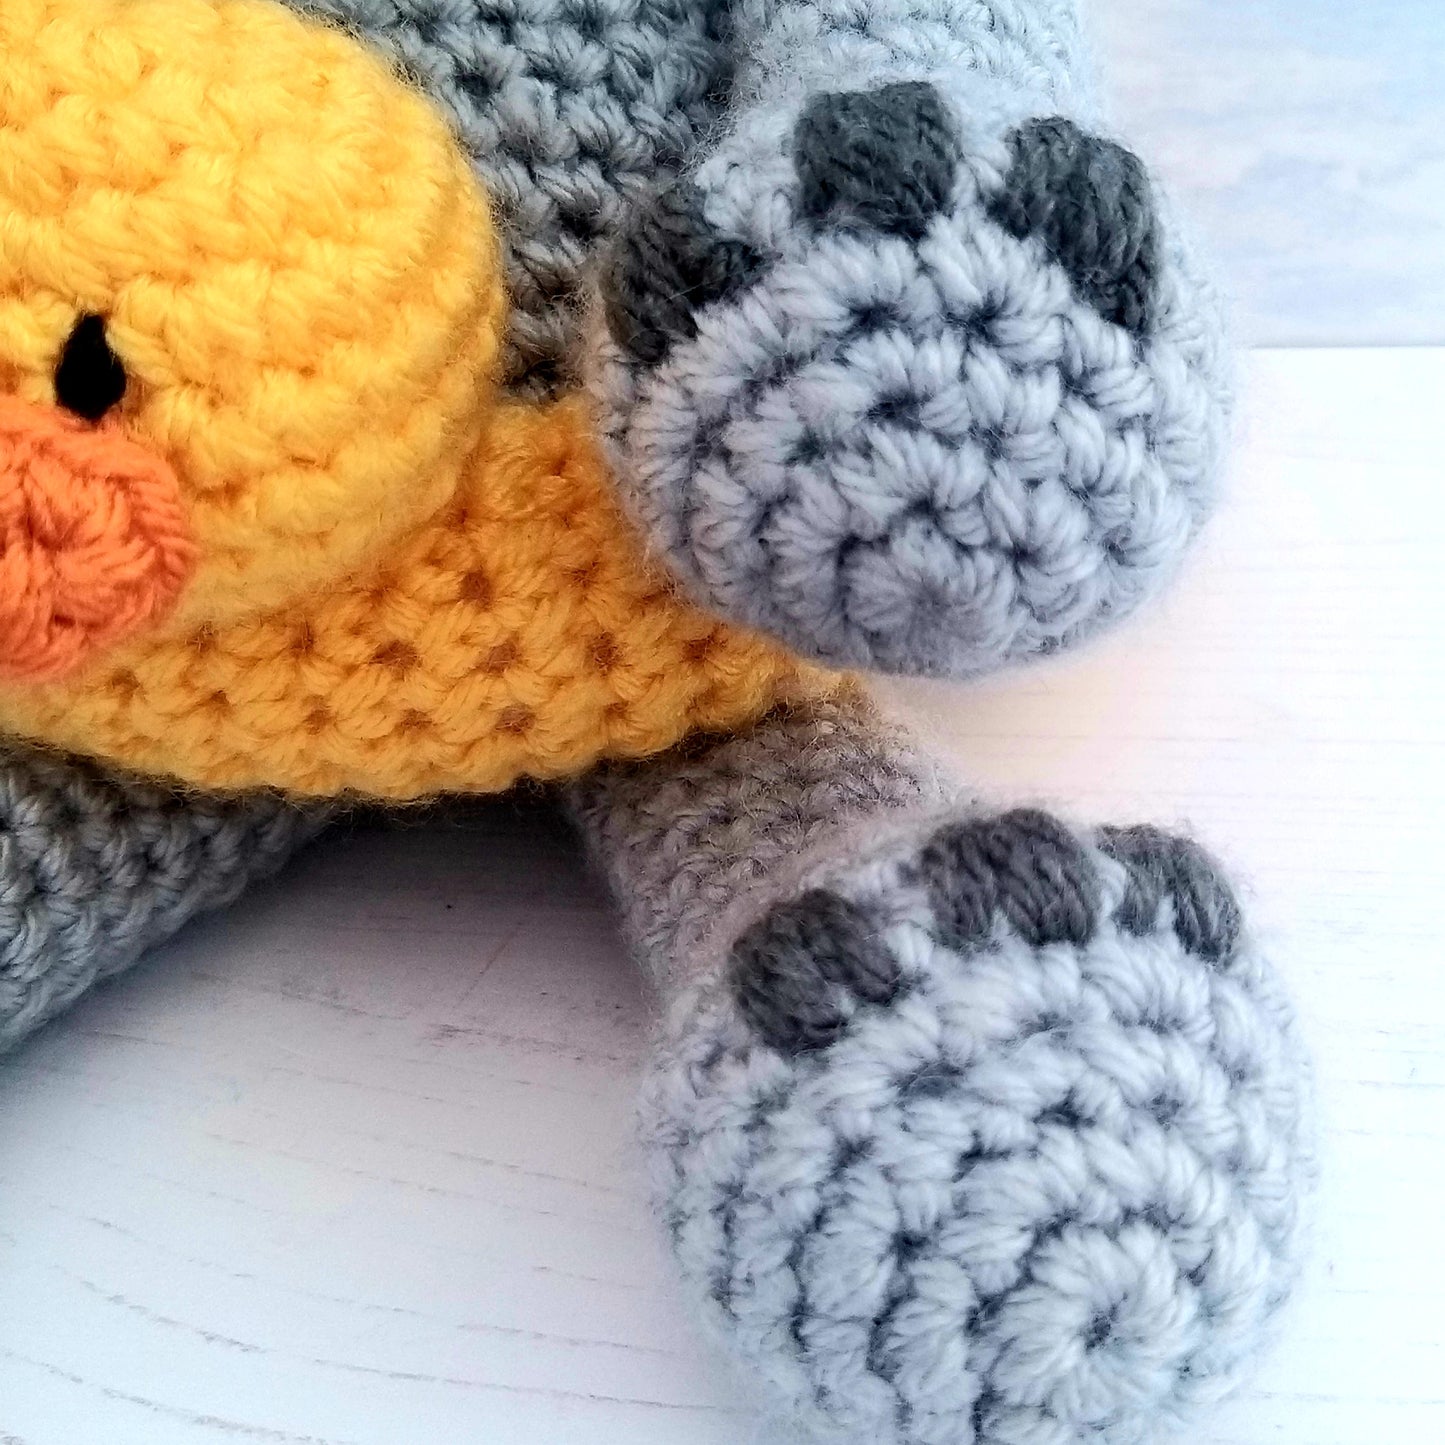 PDF Crochet Pattern - Henry the Hippo